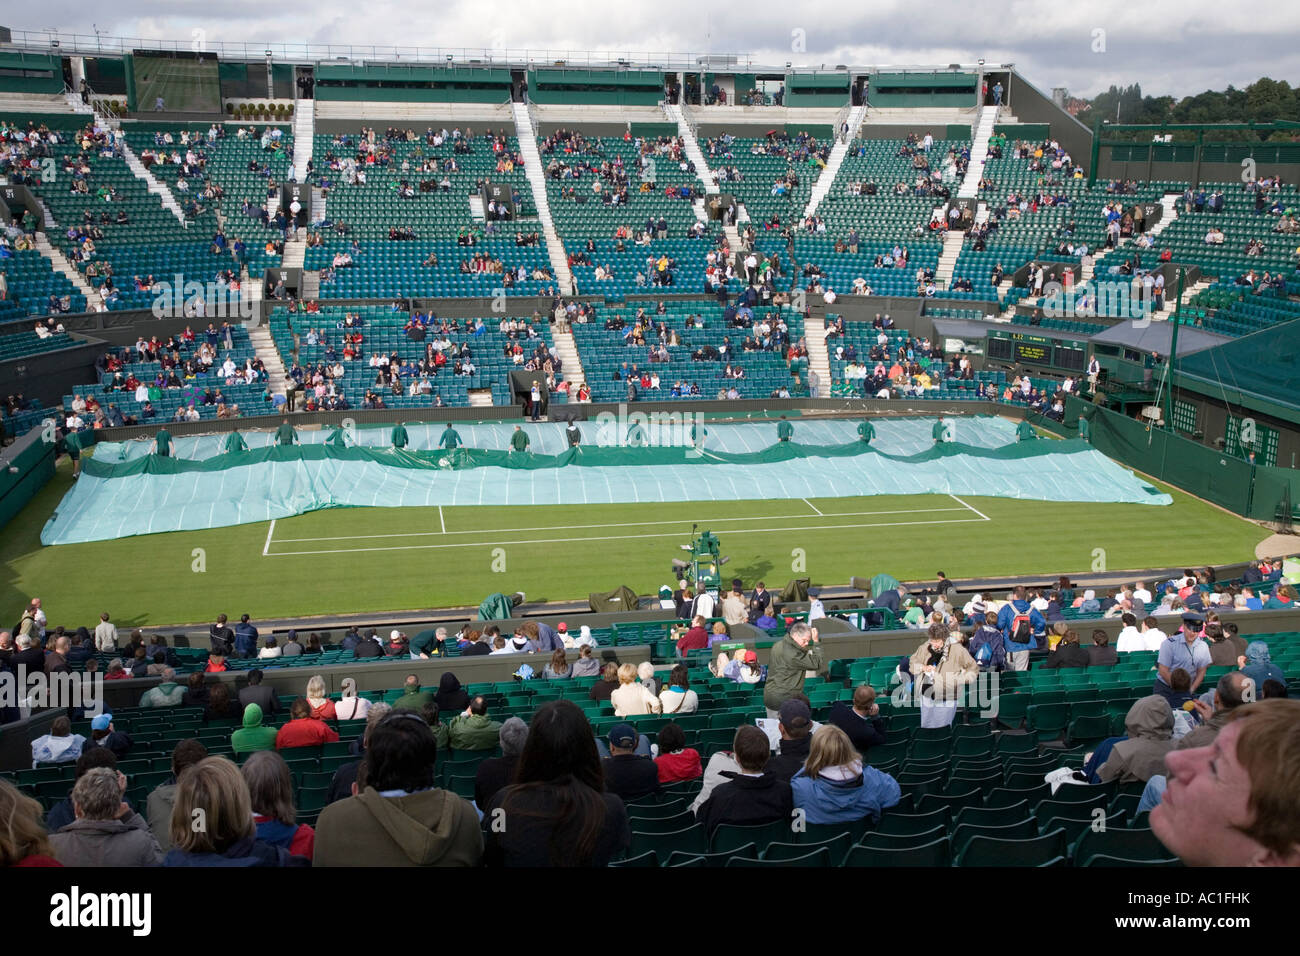 Cubiertas retiradas durante Carlos Moya Tim Henman en el centro de la cancha de juego sin techo durante el Campeonato de tenis de Wimbledon Foto de stock